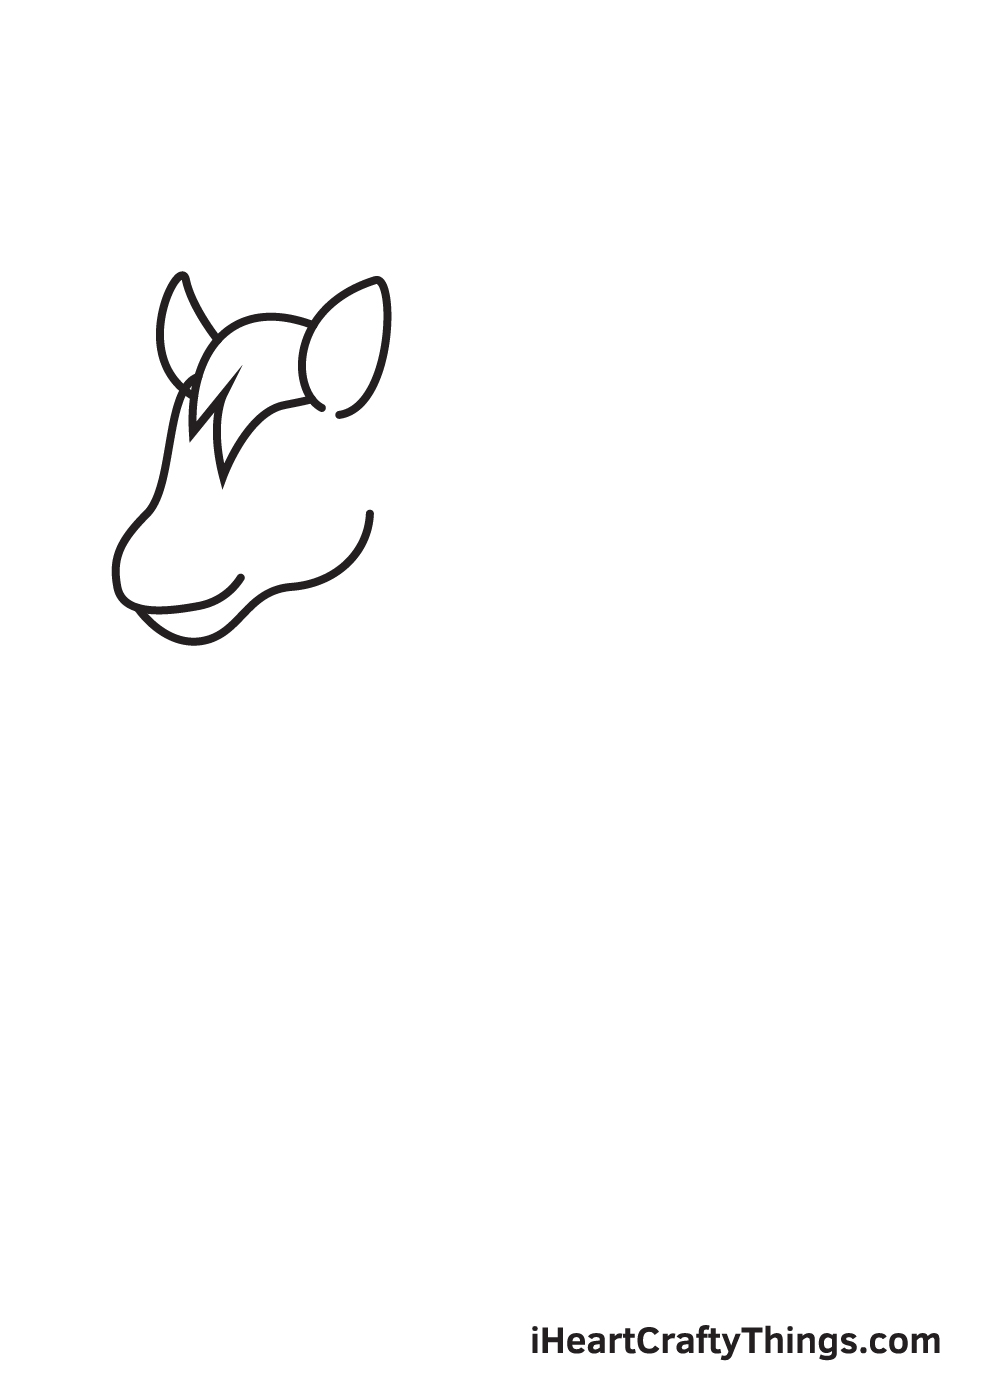 Unicorn DRAWING – STEP 2 - Hướng dẫn chi tiết cách vẽ con lân đơn giản với 9 bước cơ bản